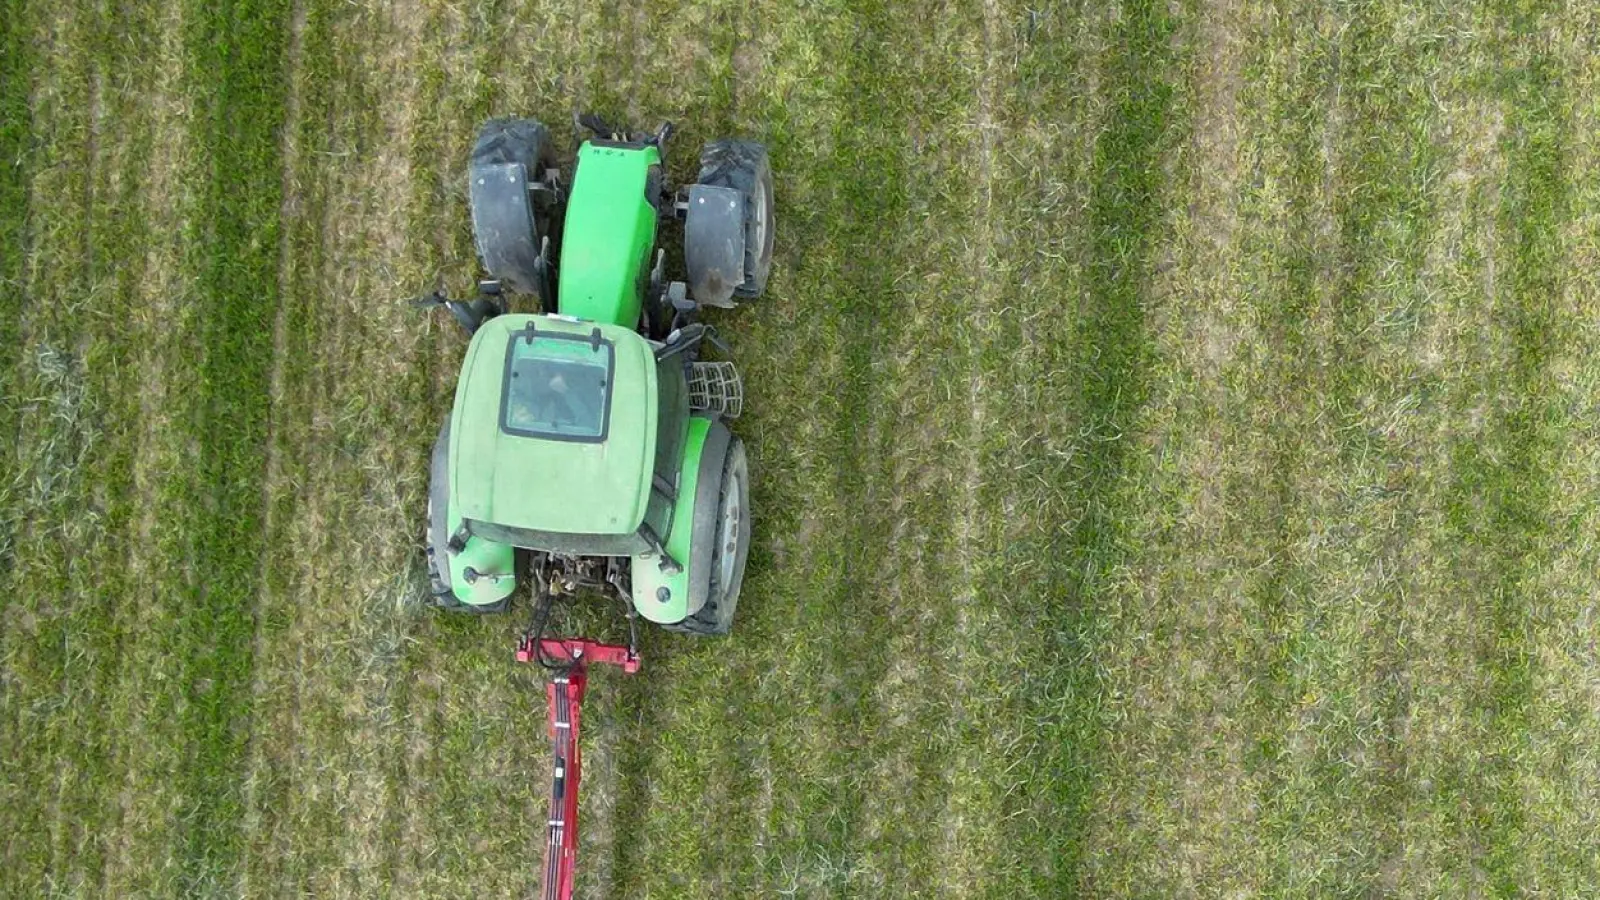 Bodenbearbeitung in der Landwirtschaft: Ob ein Traktor fährt oder nicht, kann für die Haftungsfrage bei Unfällen relevant sein. (Foto: Bernd Weißbrod/dpa)